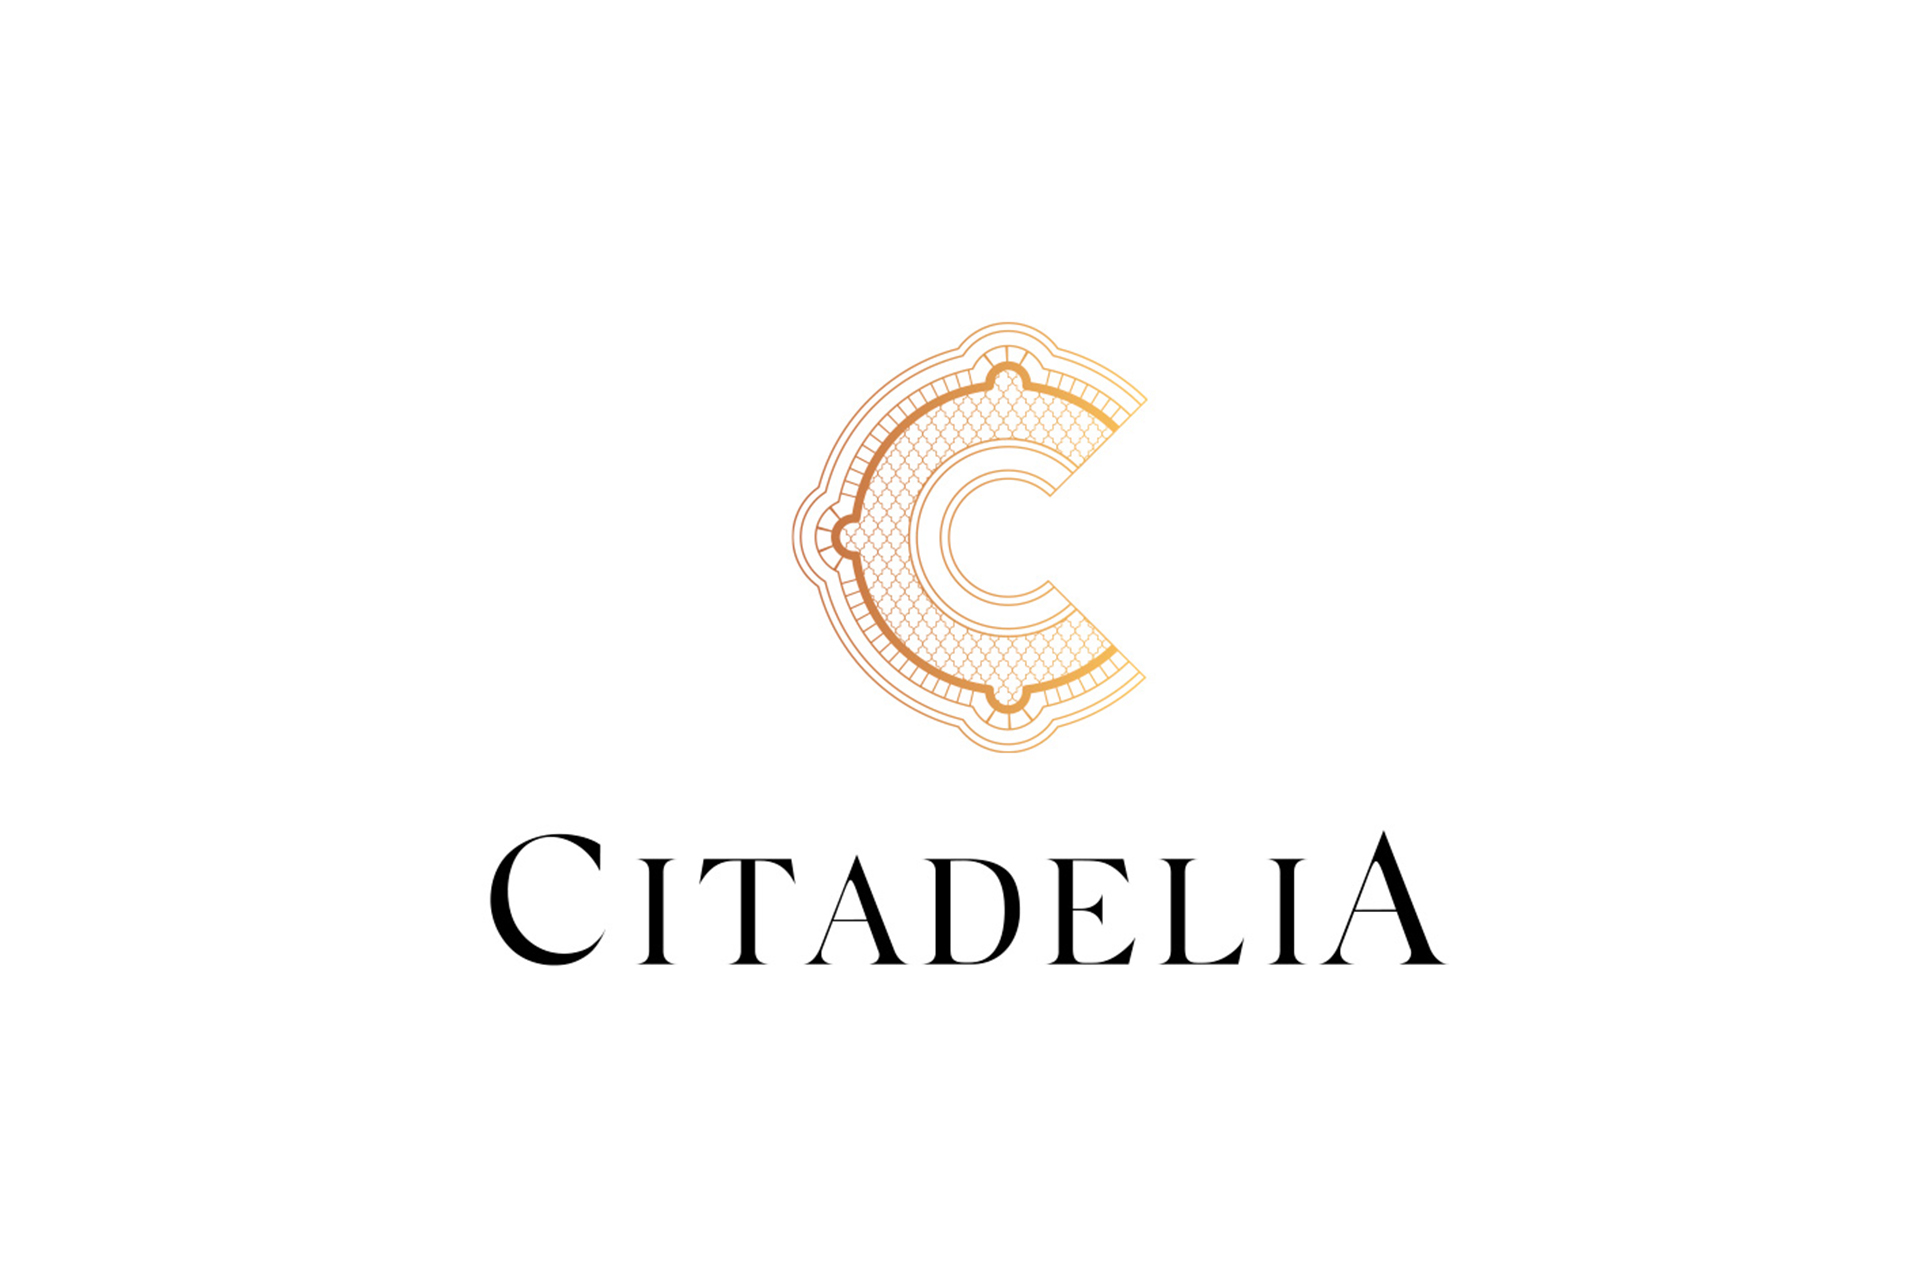 CITADELIA by Barceló estudio - Creative Work